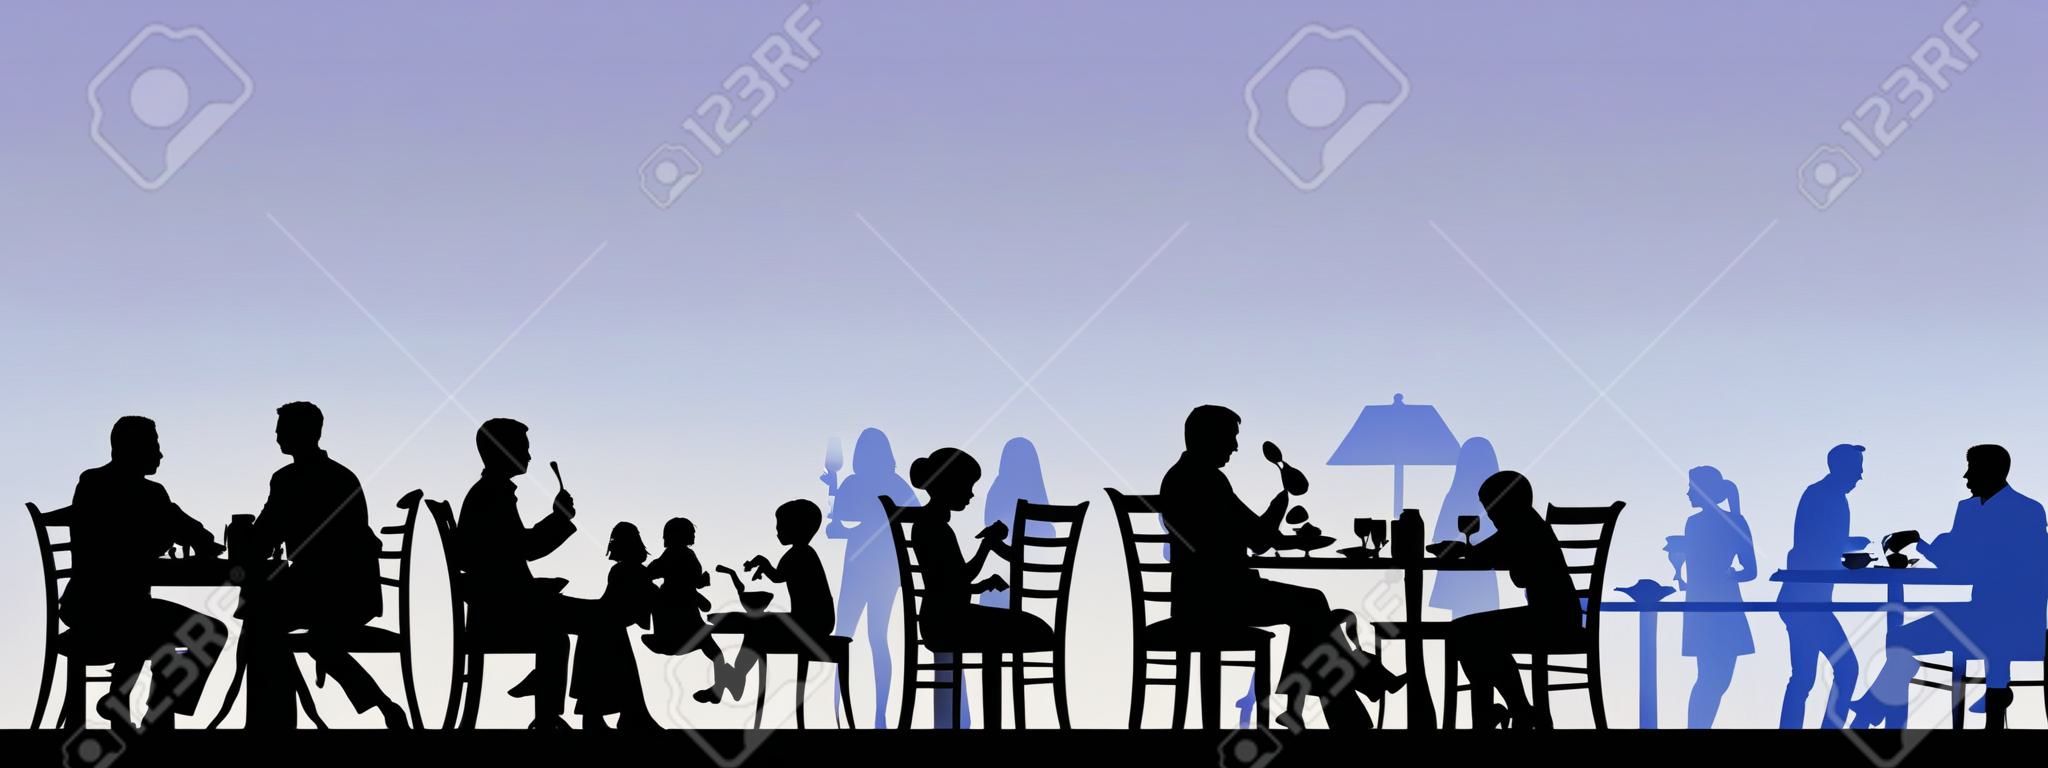 Silhouette di persone che mangiano in un ristorante con tutti i dati come oggetti separati stratificato